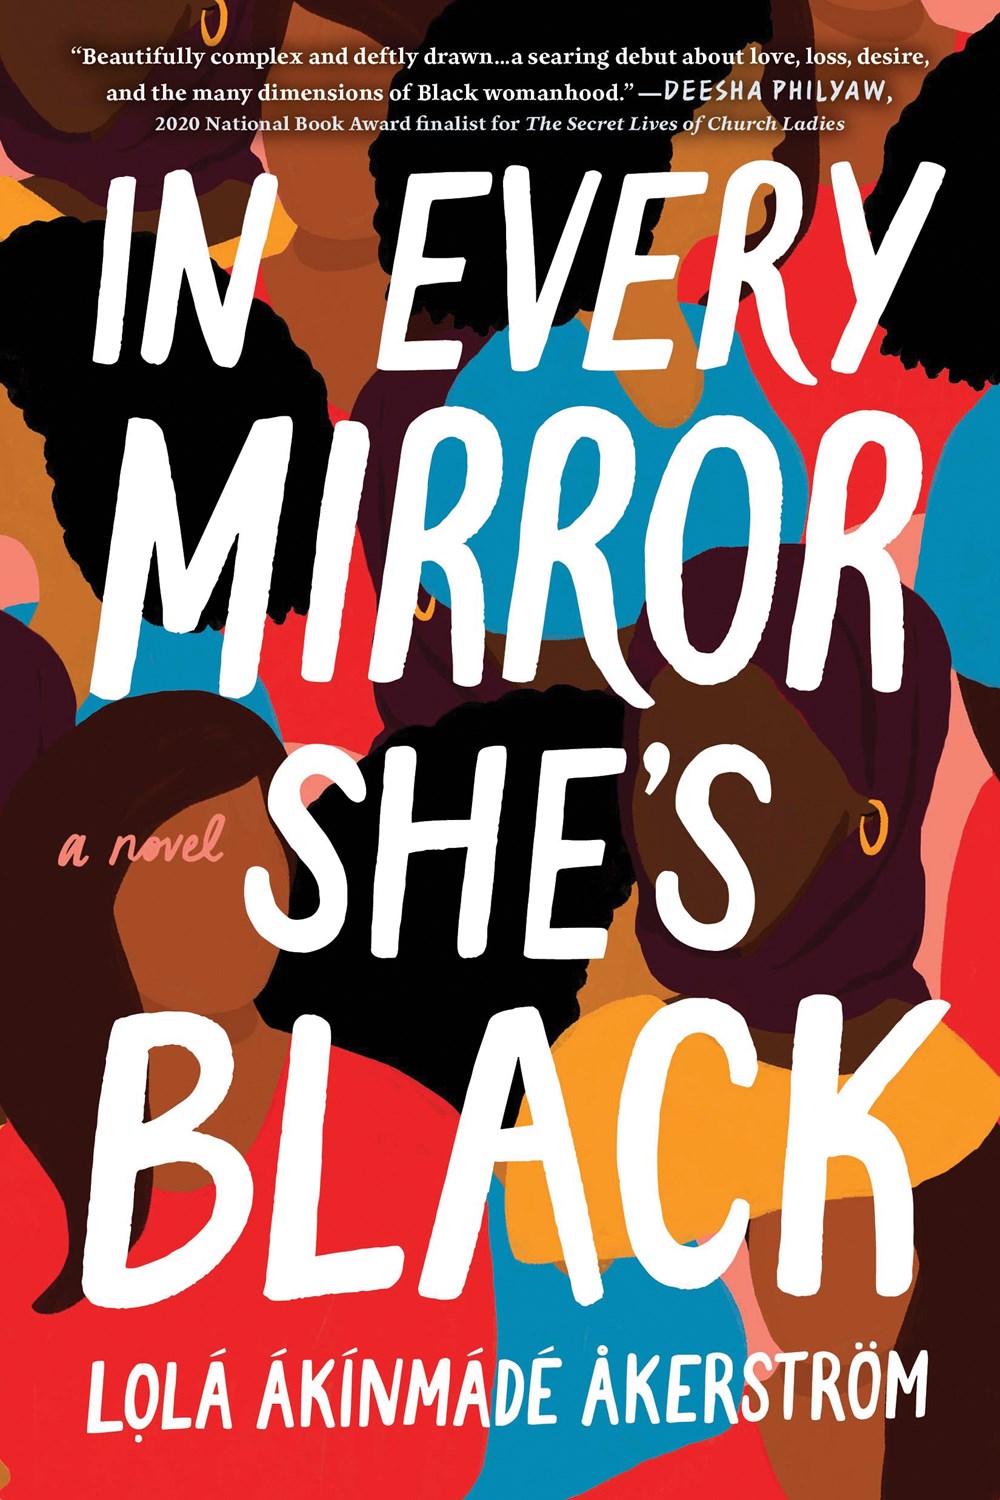 In Every Mirror She's Black by Lolá Ákínmádé Åkerström